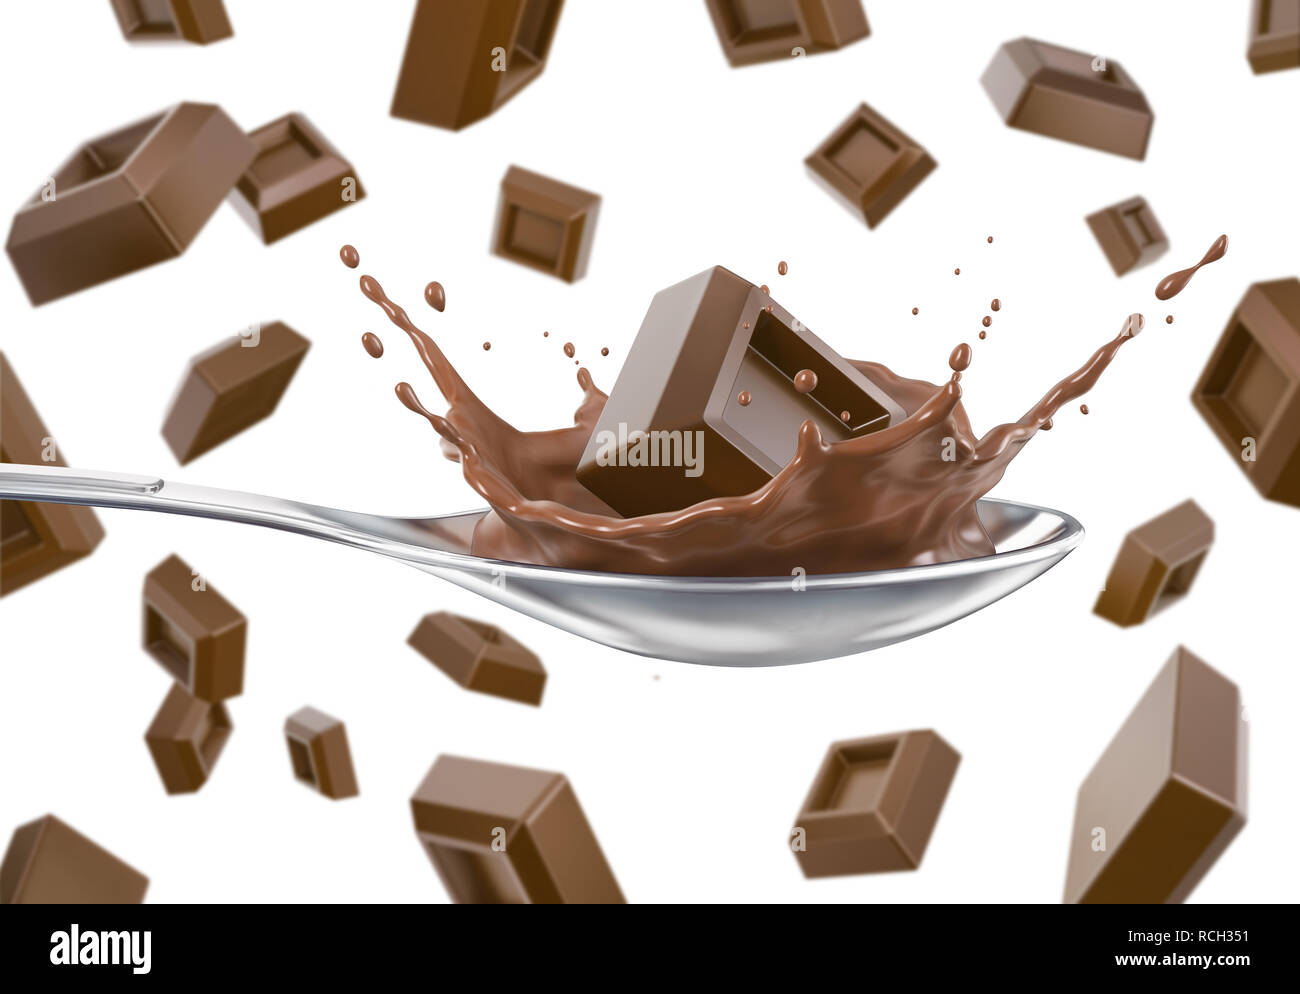 Viele Schokolade Würfel unten fallen. Ein Spritzer in einem Löffel mit flüssiger Schokolade. Auf weissem Hintergrund. Beschneidungspfad enthalten. Stockfoto